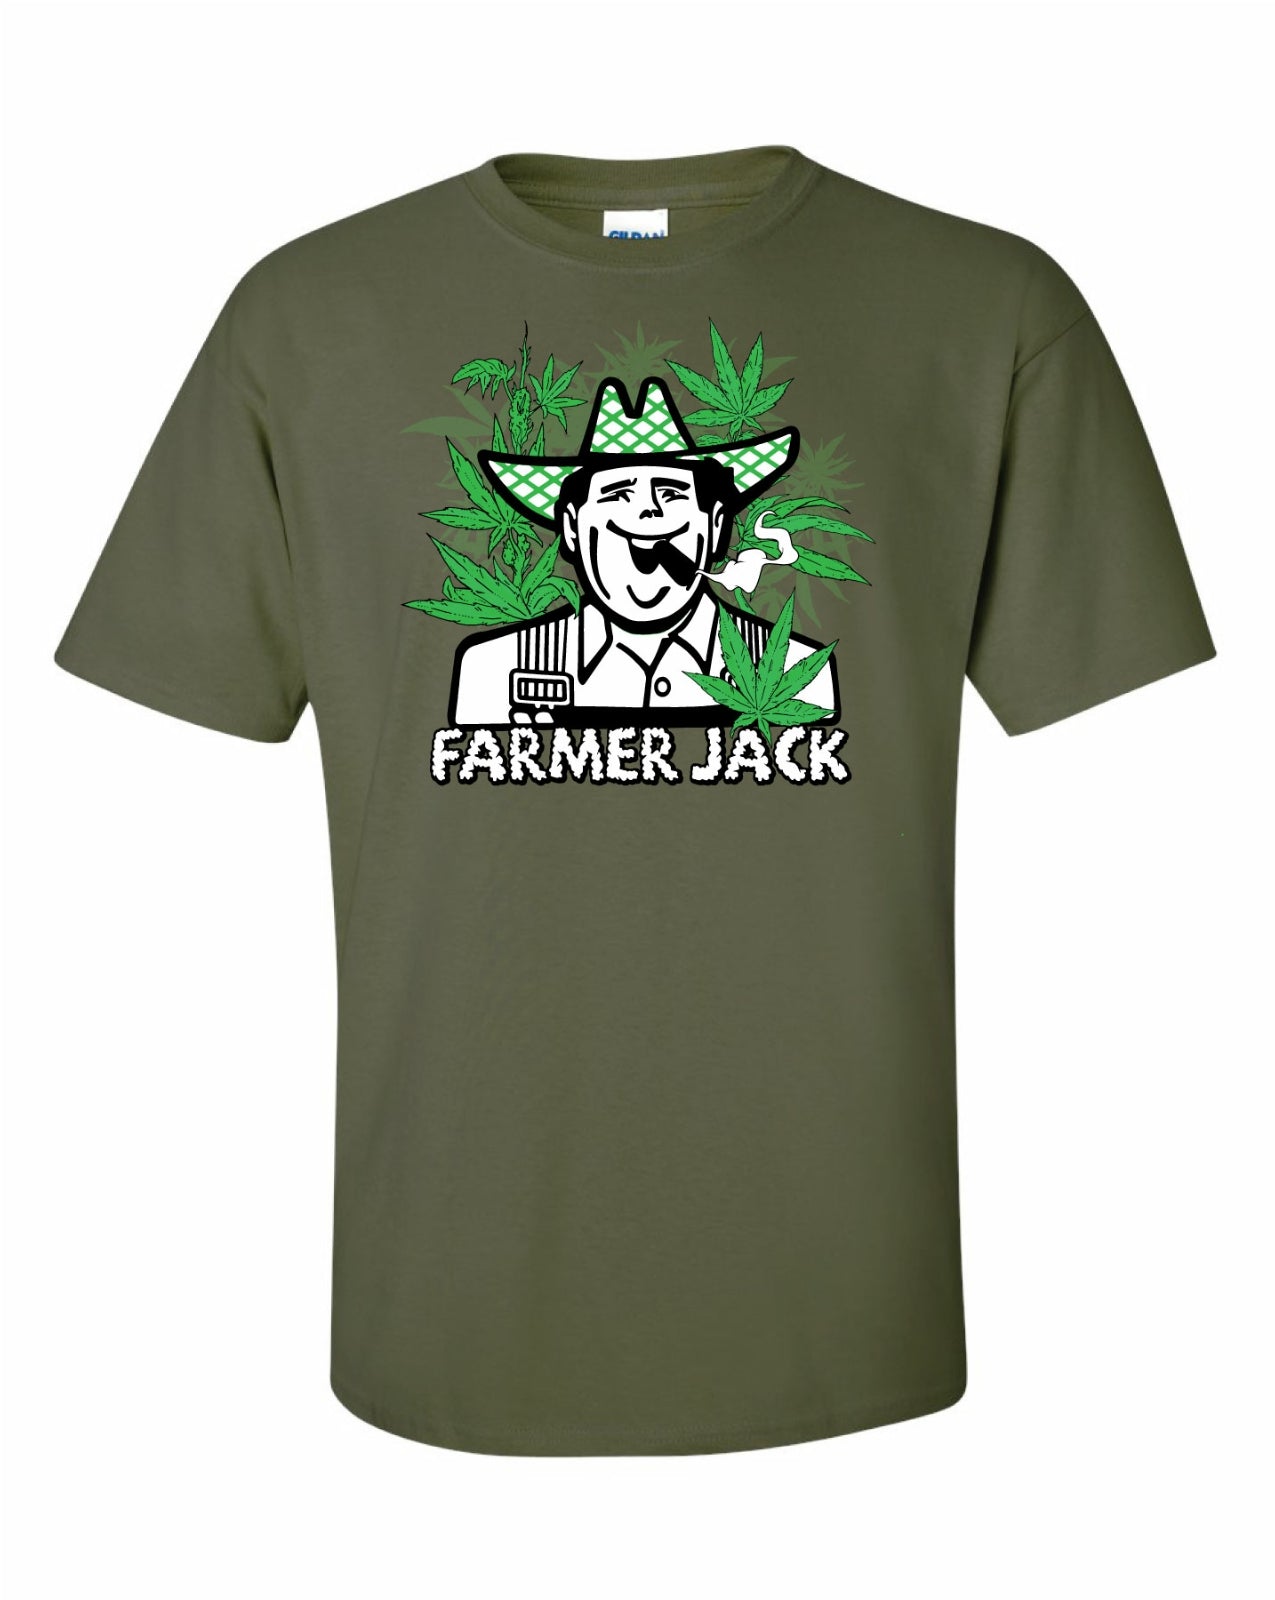 FARMER JACK growers choice t-shirt